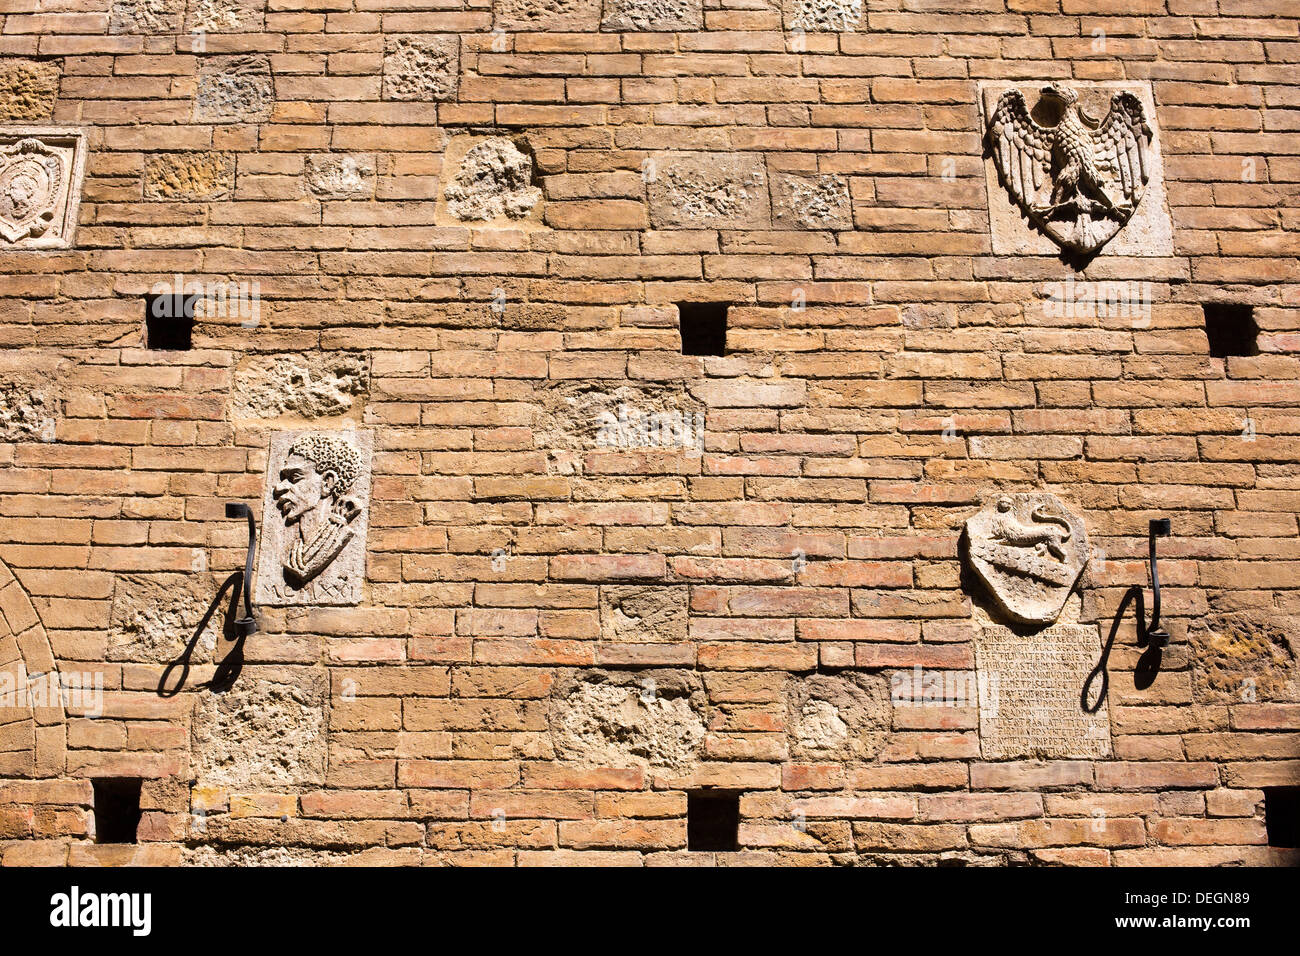 Les détails de la sculpture sur un mur, Sienne, Toscane, Italie Banque D'Images